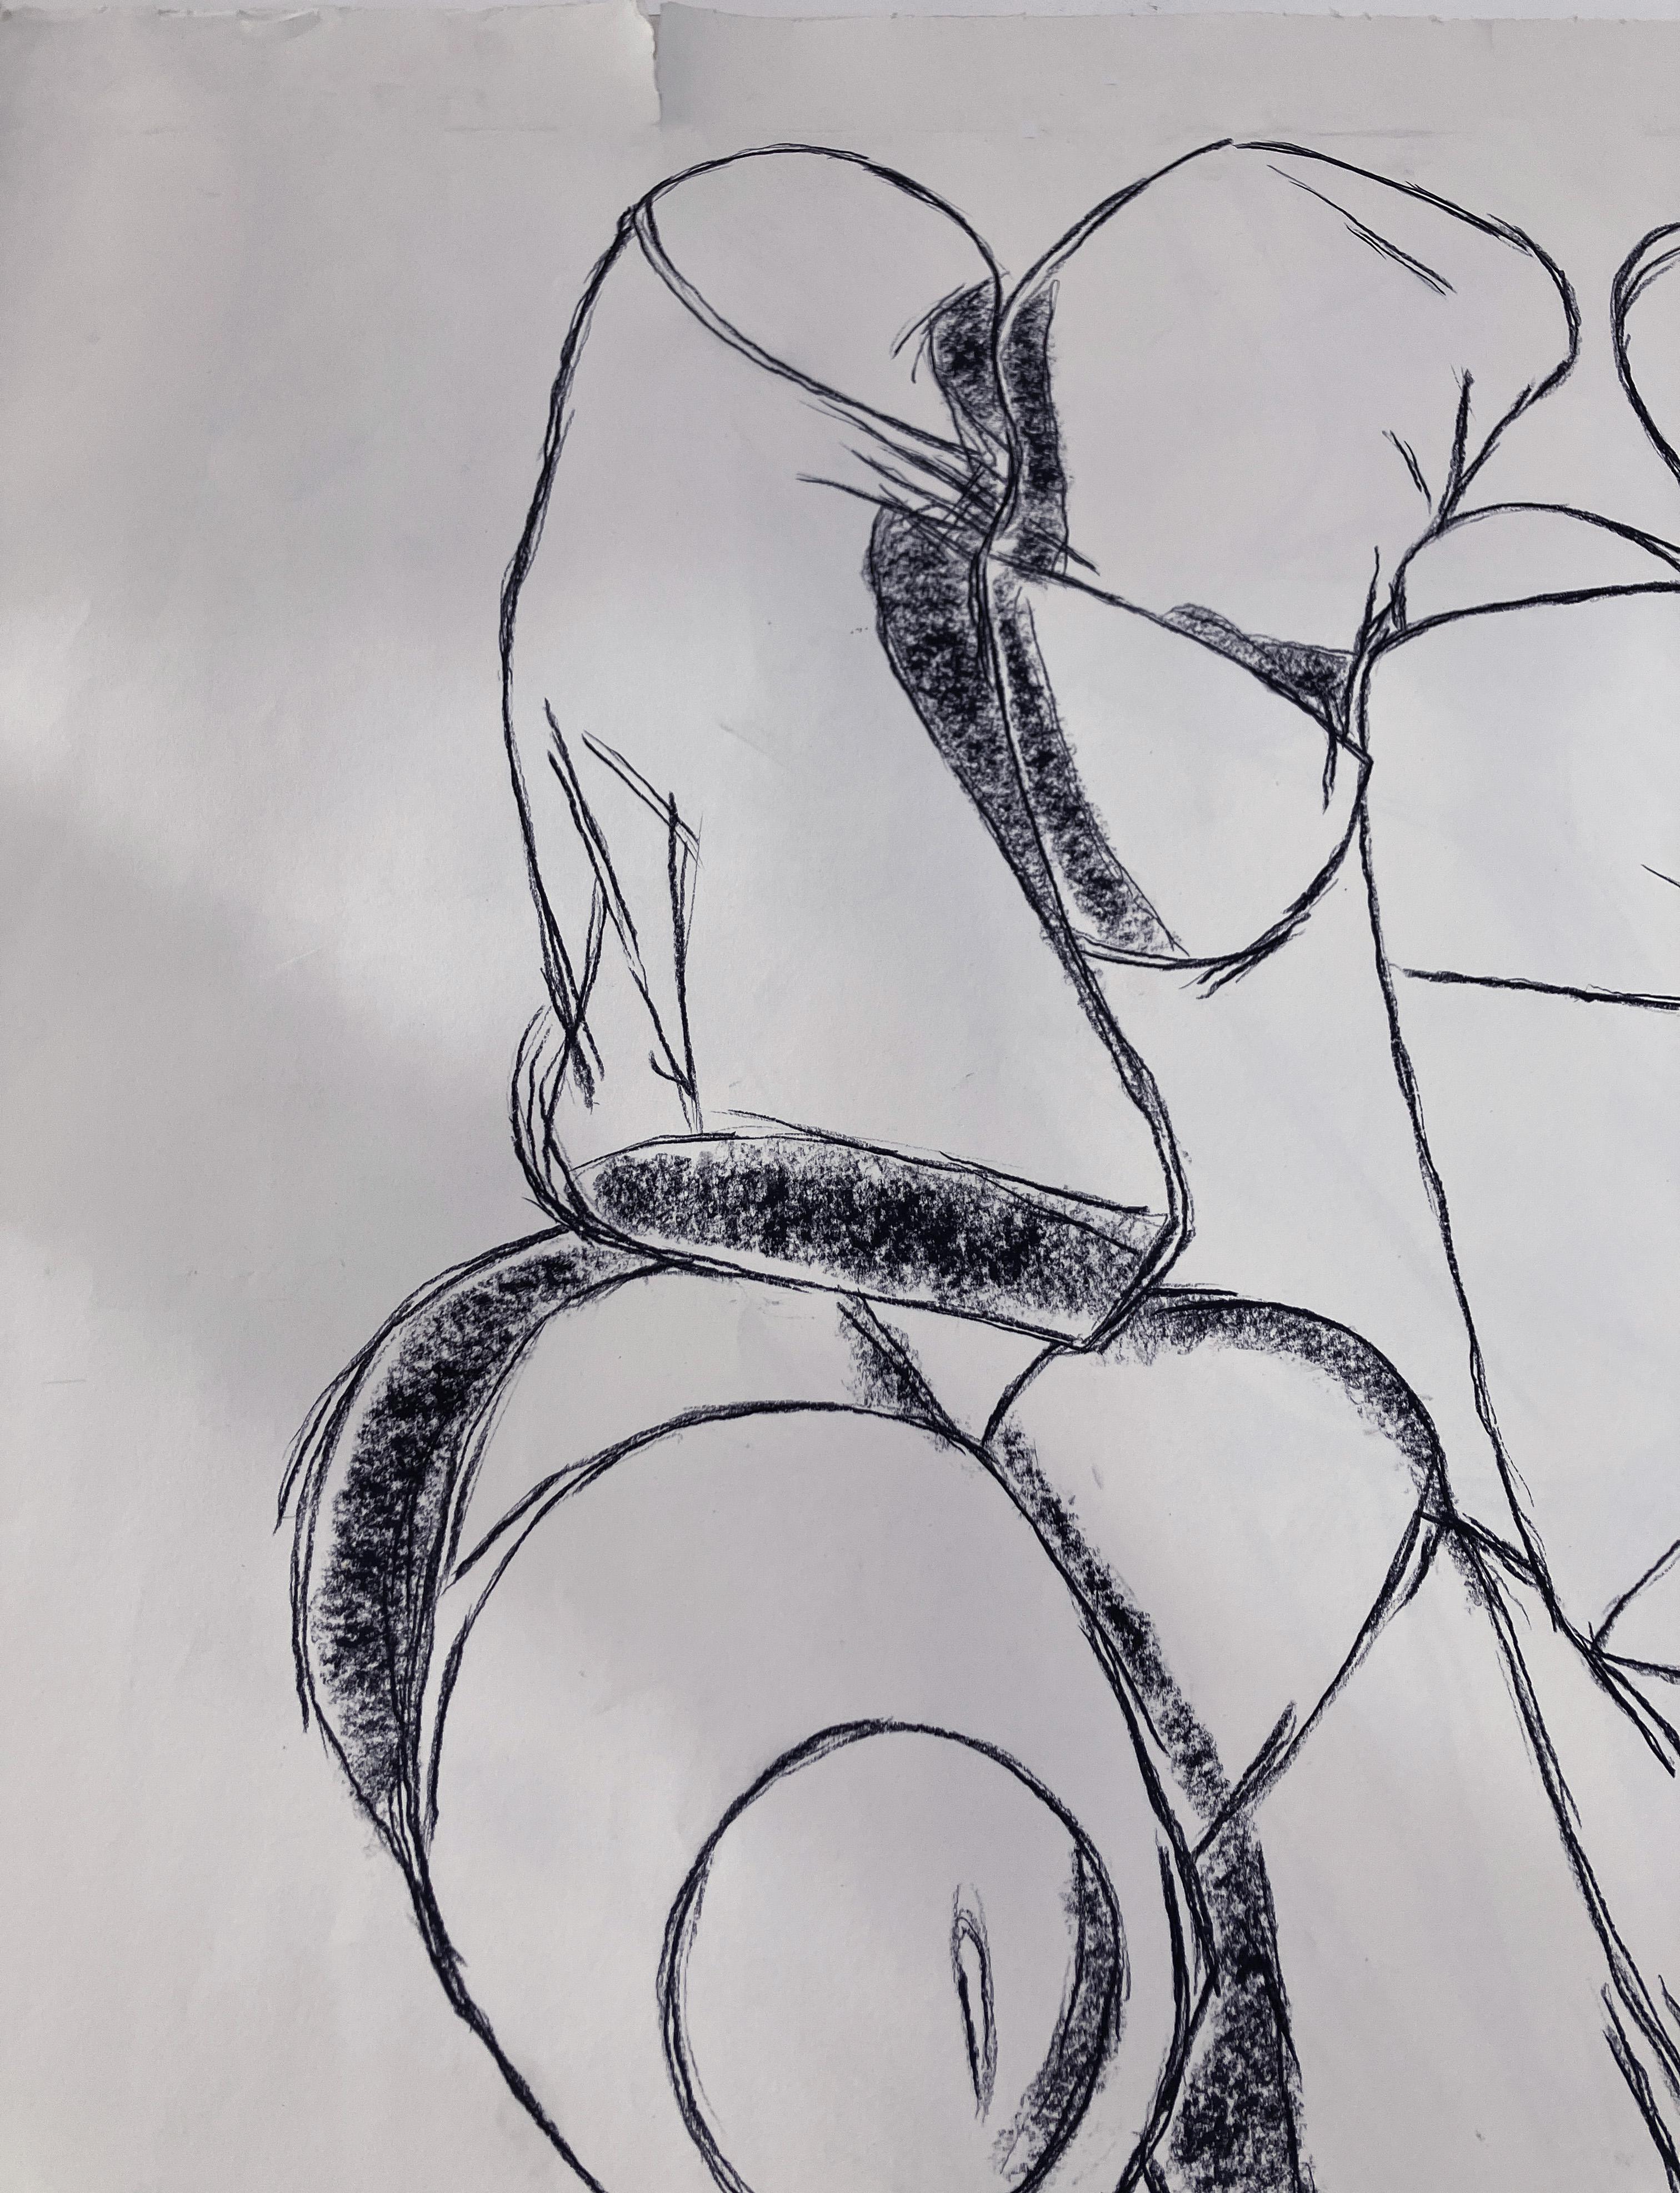 Sans titre - Pénis par Celso Castro-Daza
Crayon aquarelle sur papier d'archives
Taille de l'image : 48 in. H x 39.5 in. W 
Taille de la feuille : 59.5 in. H x 44 in. W 
Unique en son genre
1996

Le dessin sur papier est son outil de travail de base,